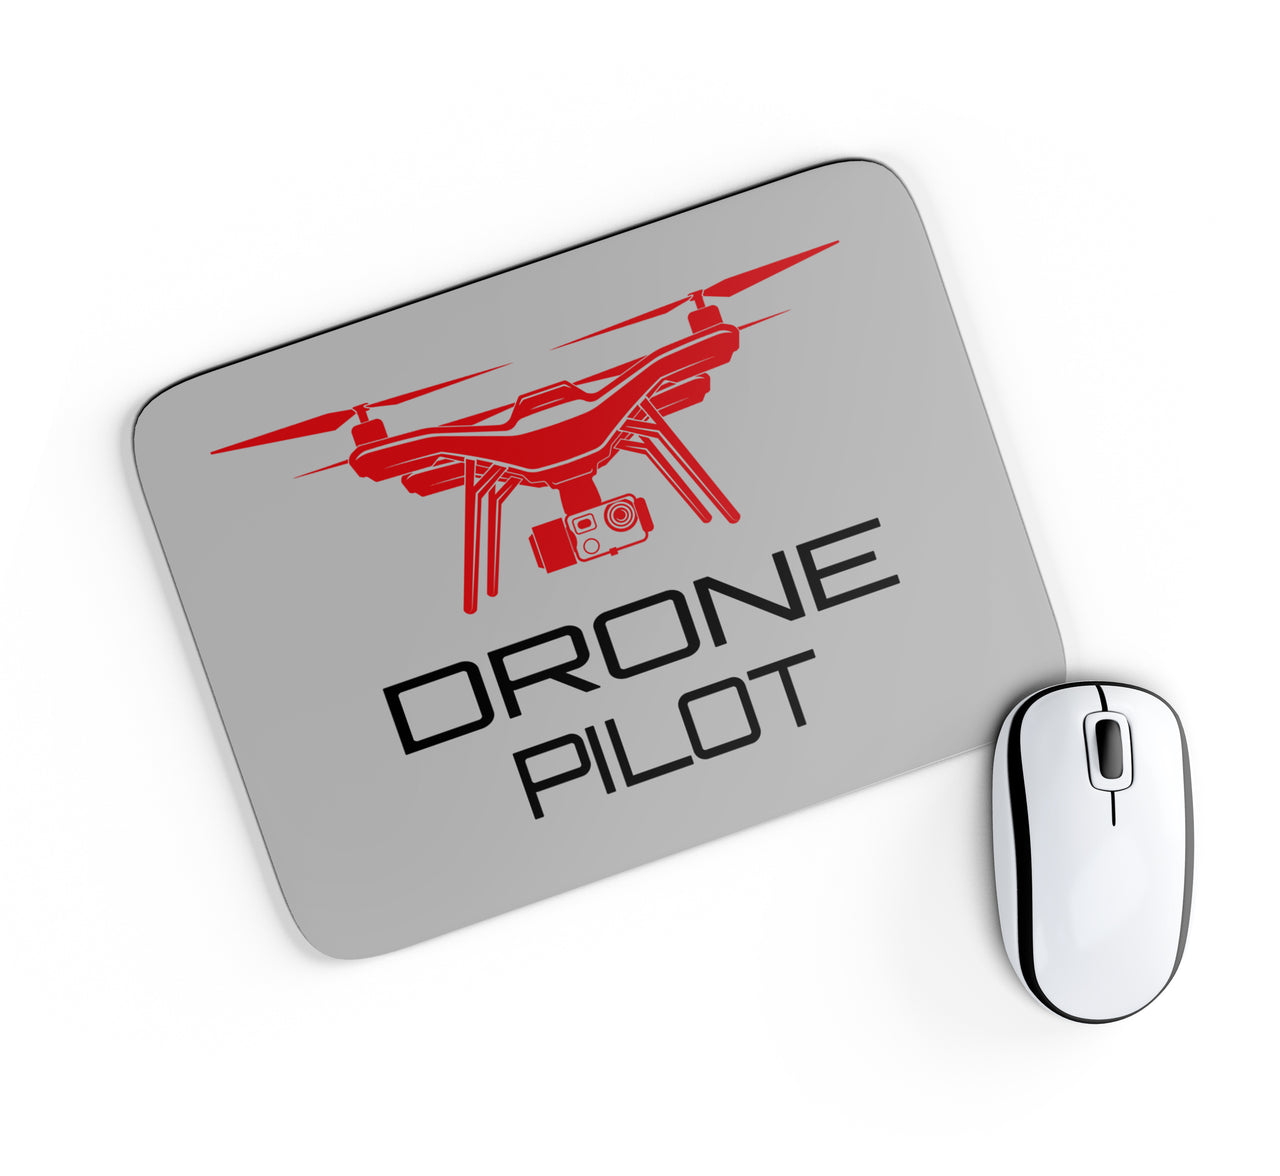 Drone Pilot Designed Mouse Pads